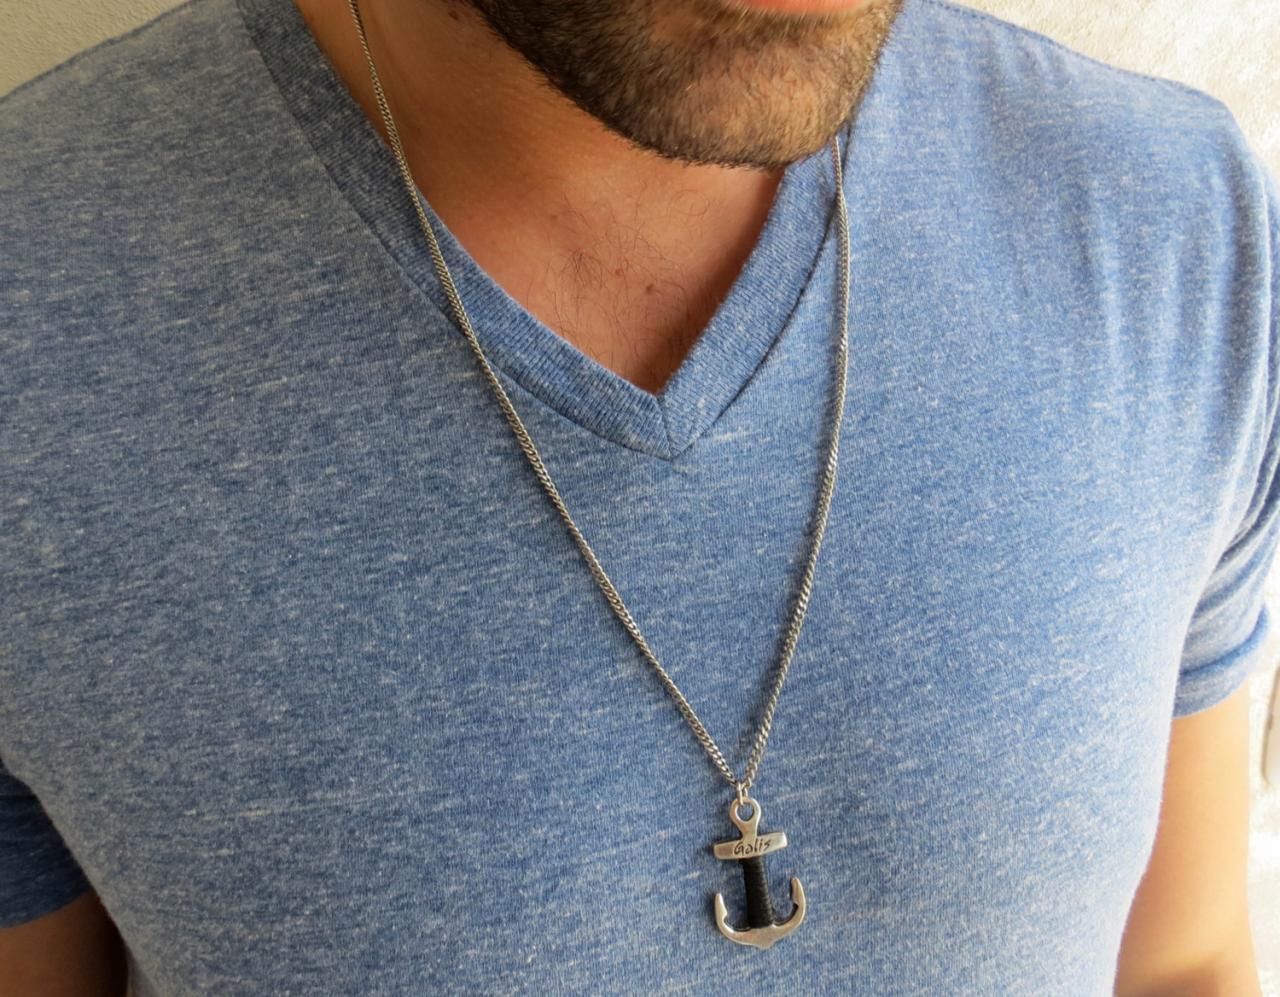 Men's Necklace - Men's Silver Necklace - Men's Anchor Necklace - Men's Jewelry - Men's Gift -